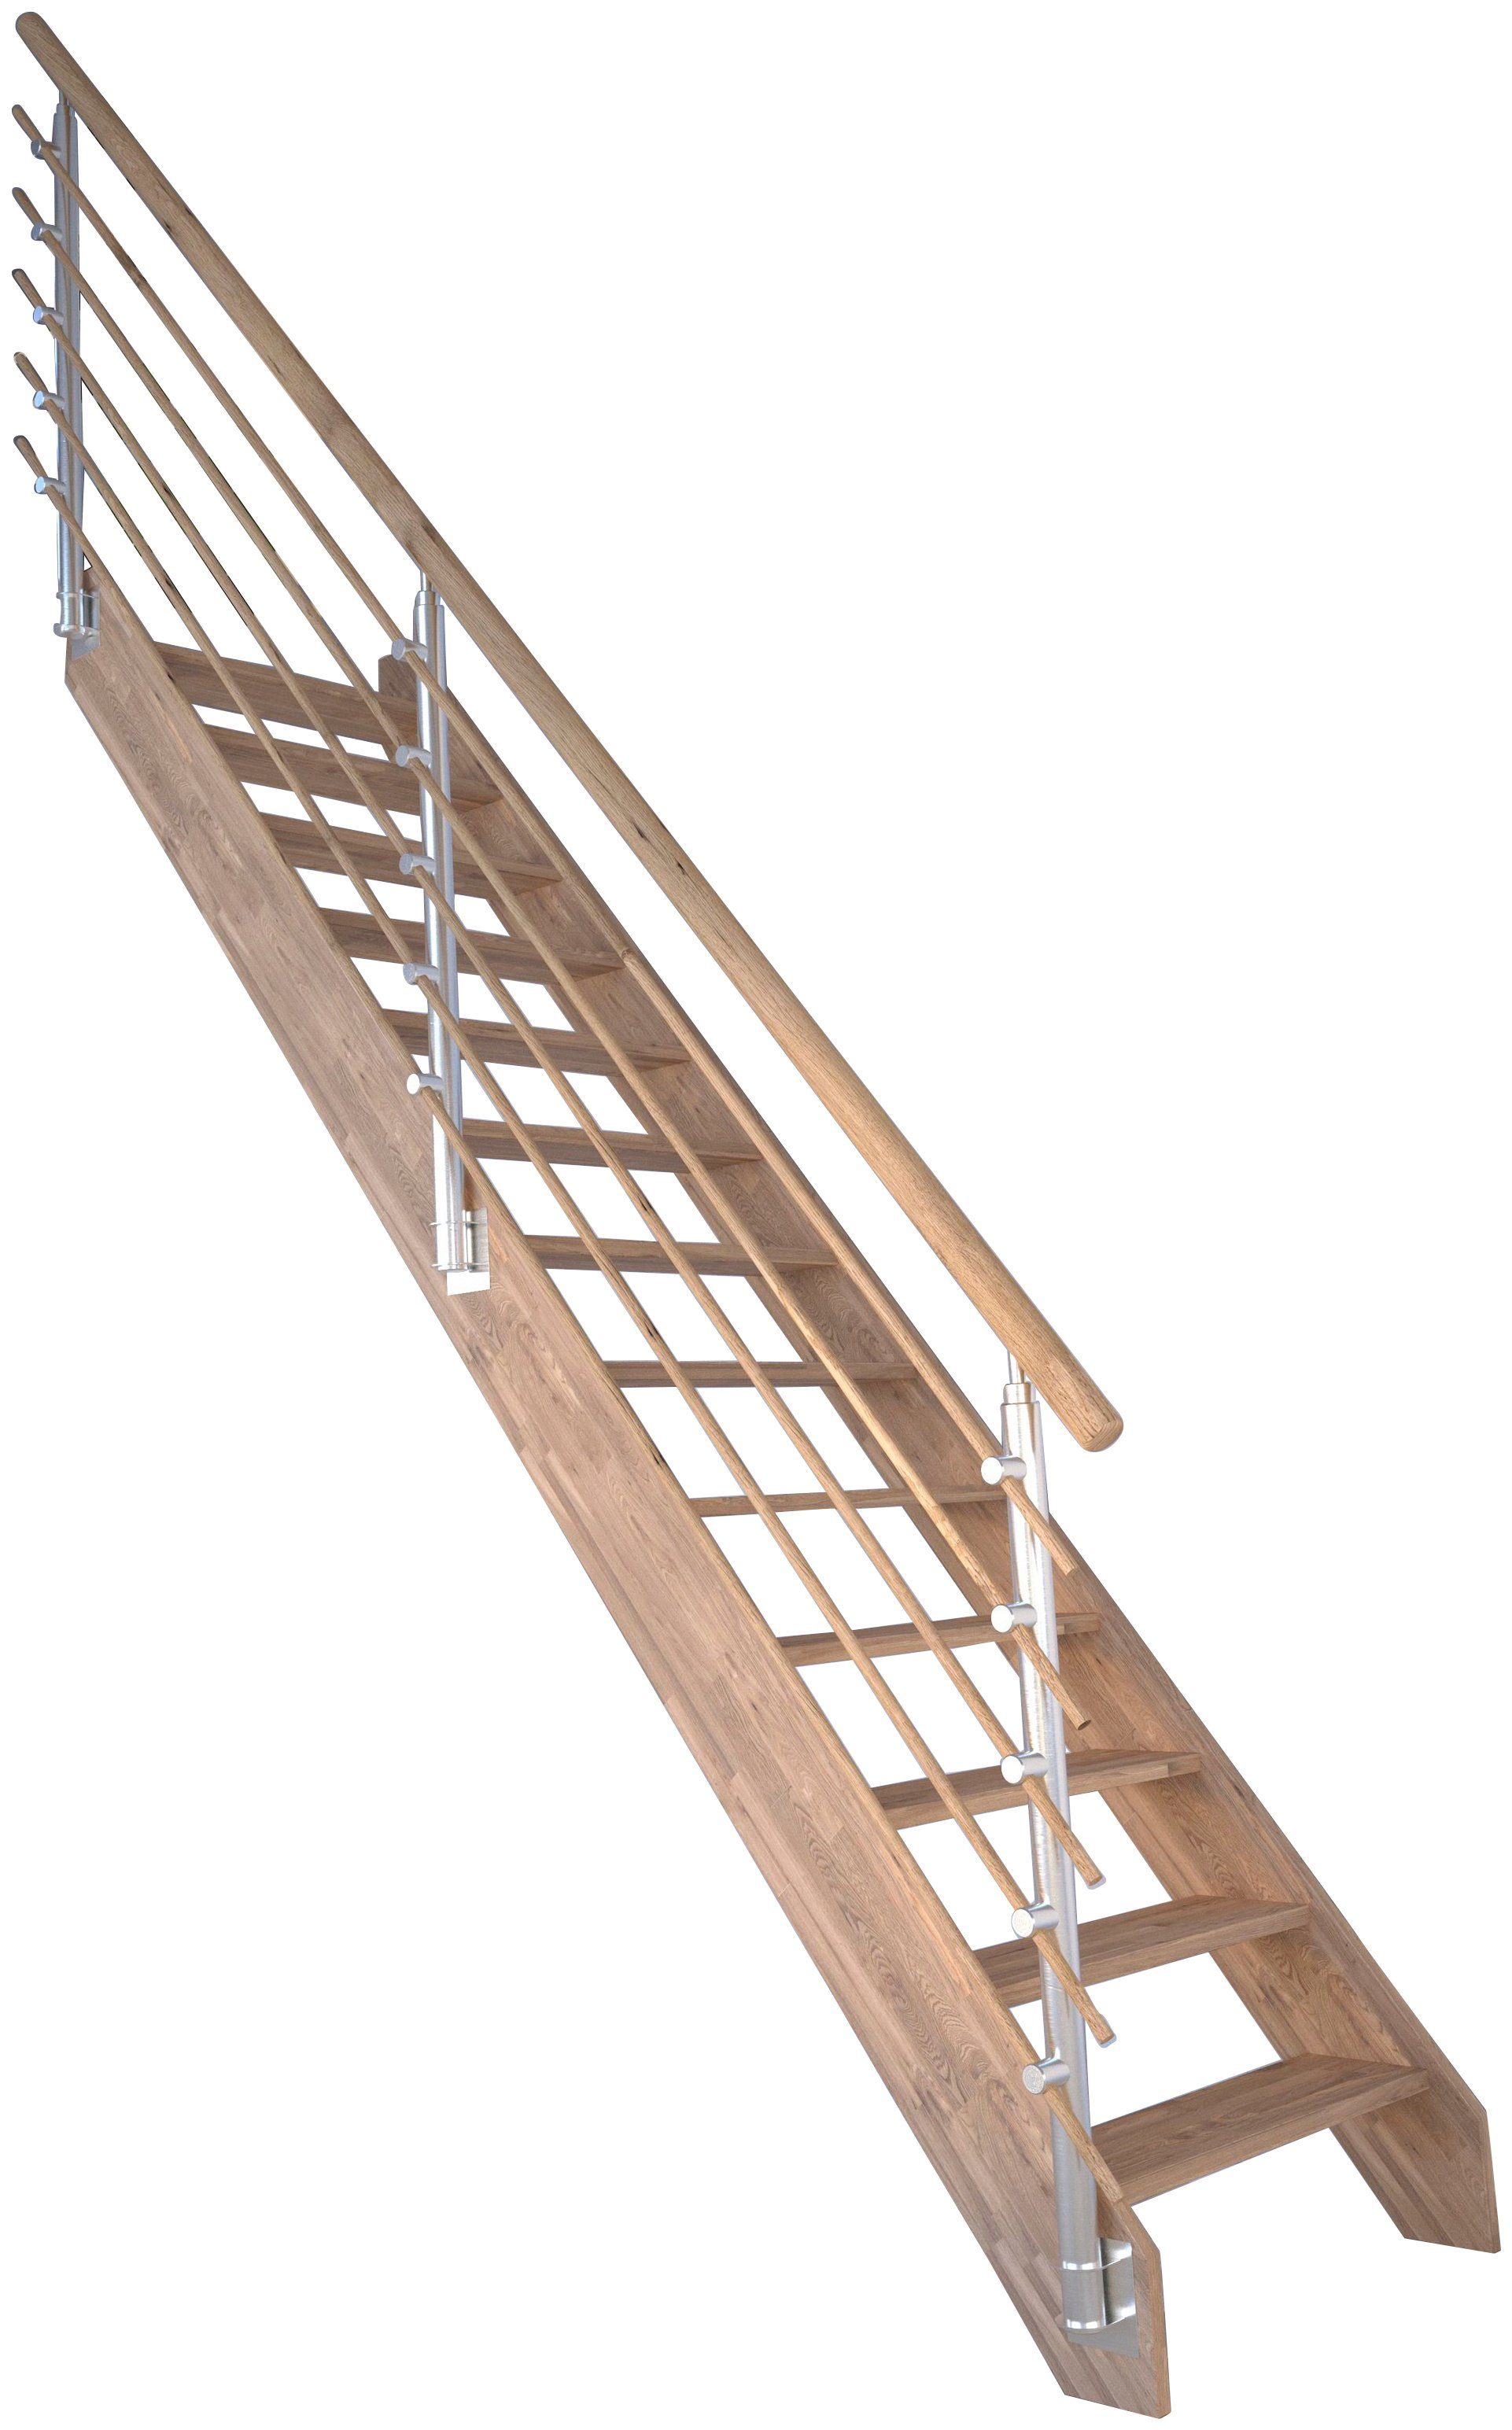 Starwood Raumspartreppe Massivholz Rhodos, Design-Geländer Holzrundstäb, für Geschosshöhen bis 300 cm, Stufen offen, Durchgehende Wangenteile